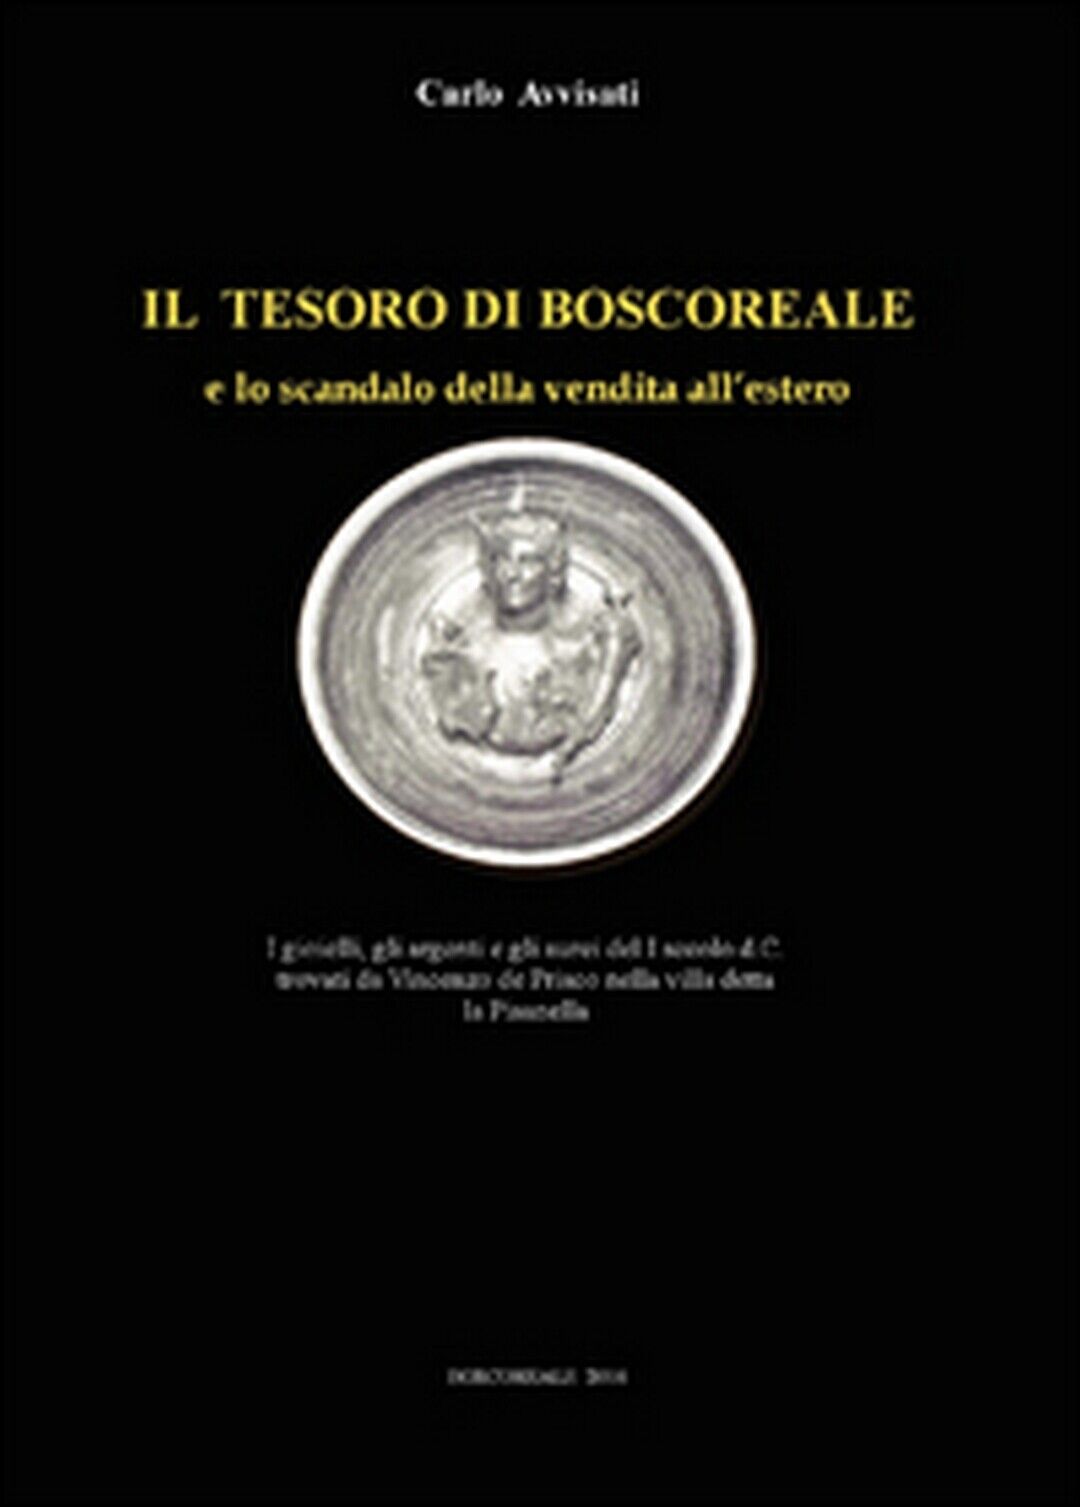 Il tesoro di Boscoreale e lo scandalo della vendita alL'estero, Carlo Avvisati libro usato